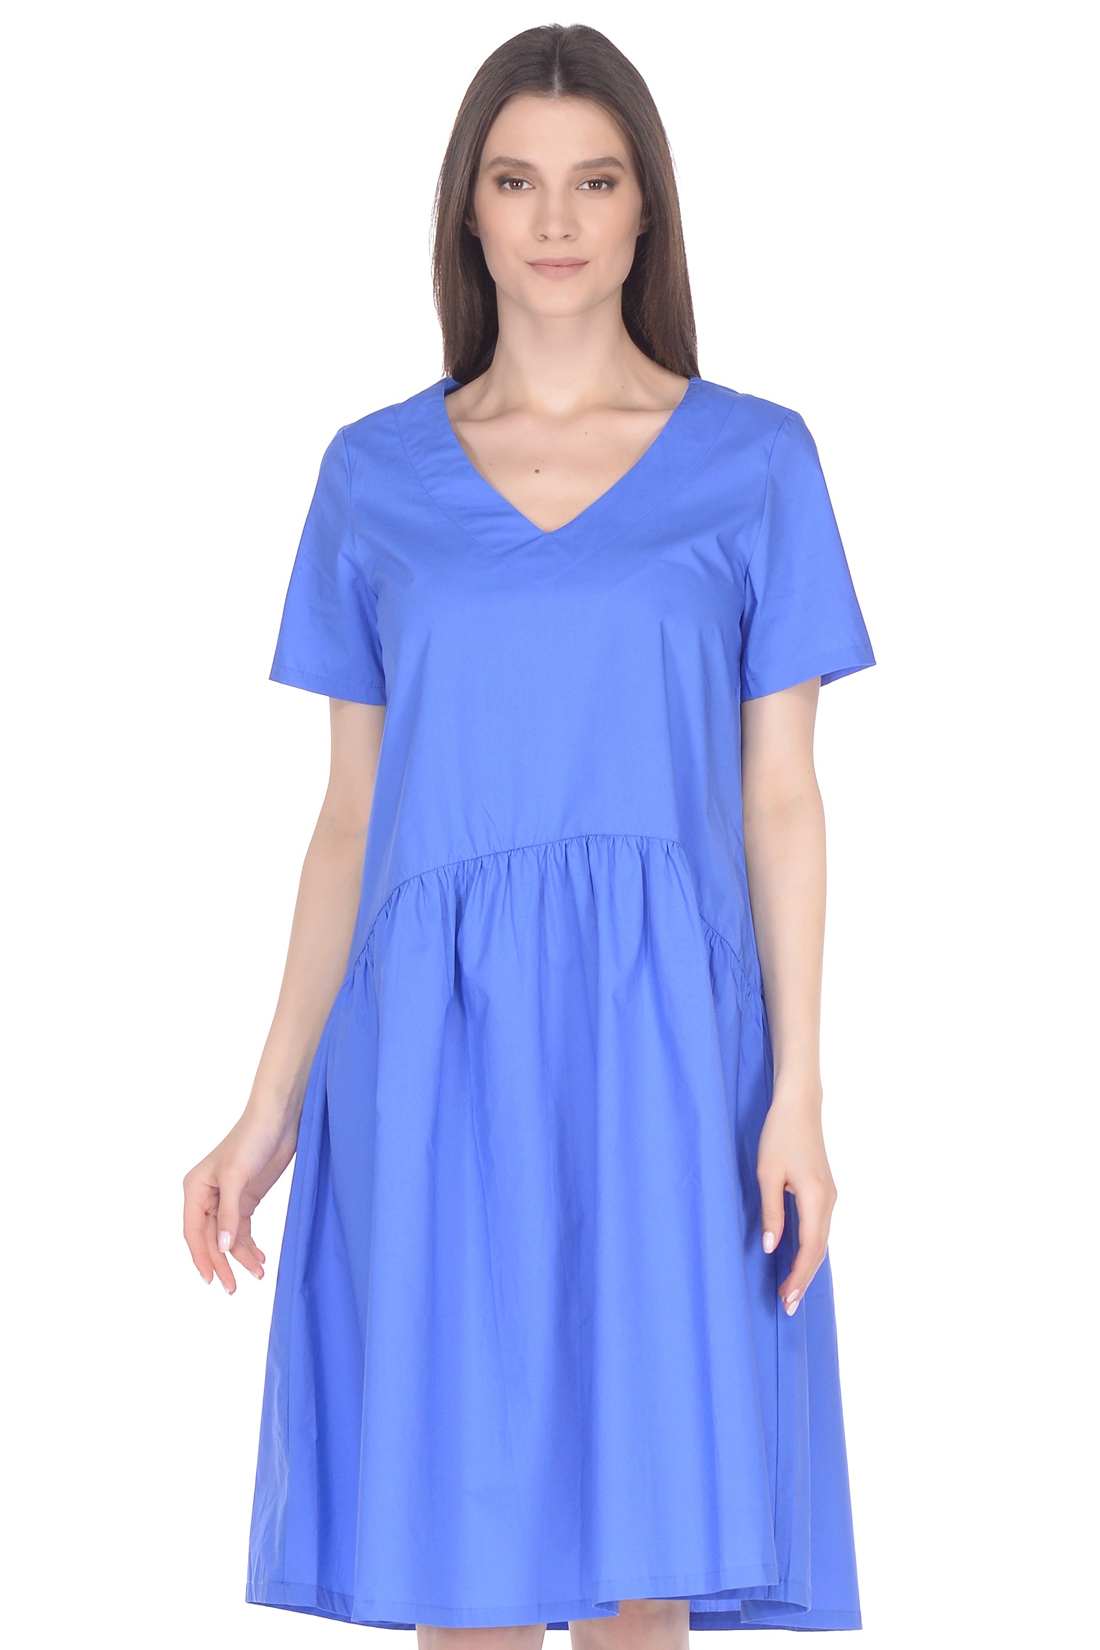 Свободное платье из хлопка (арт. baon B458061), размер XL, цвет синий Свободное платье из хлопка (арт. baon B458061) - фото 3